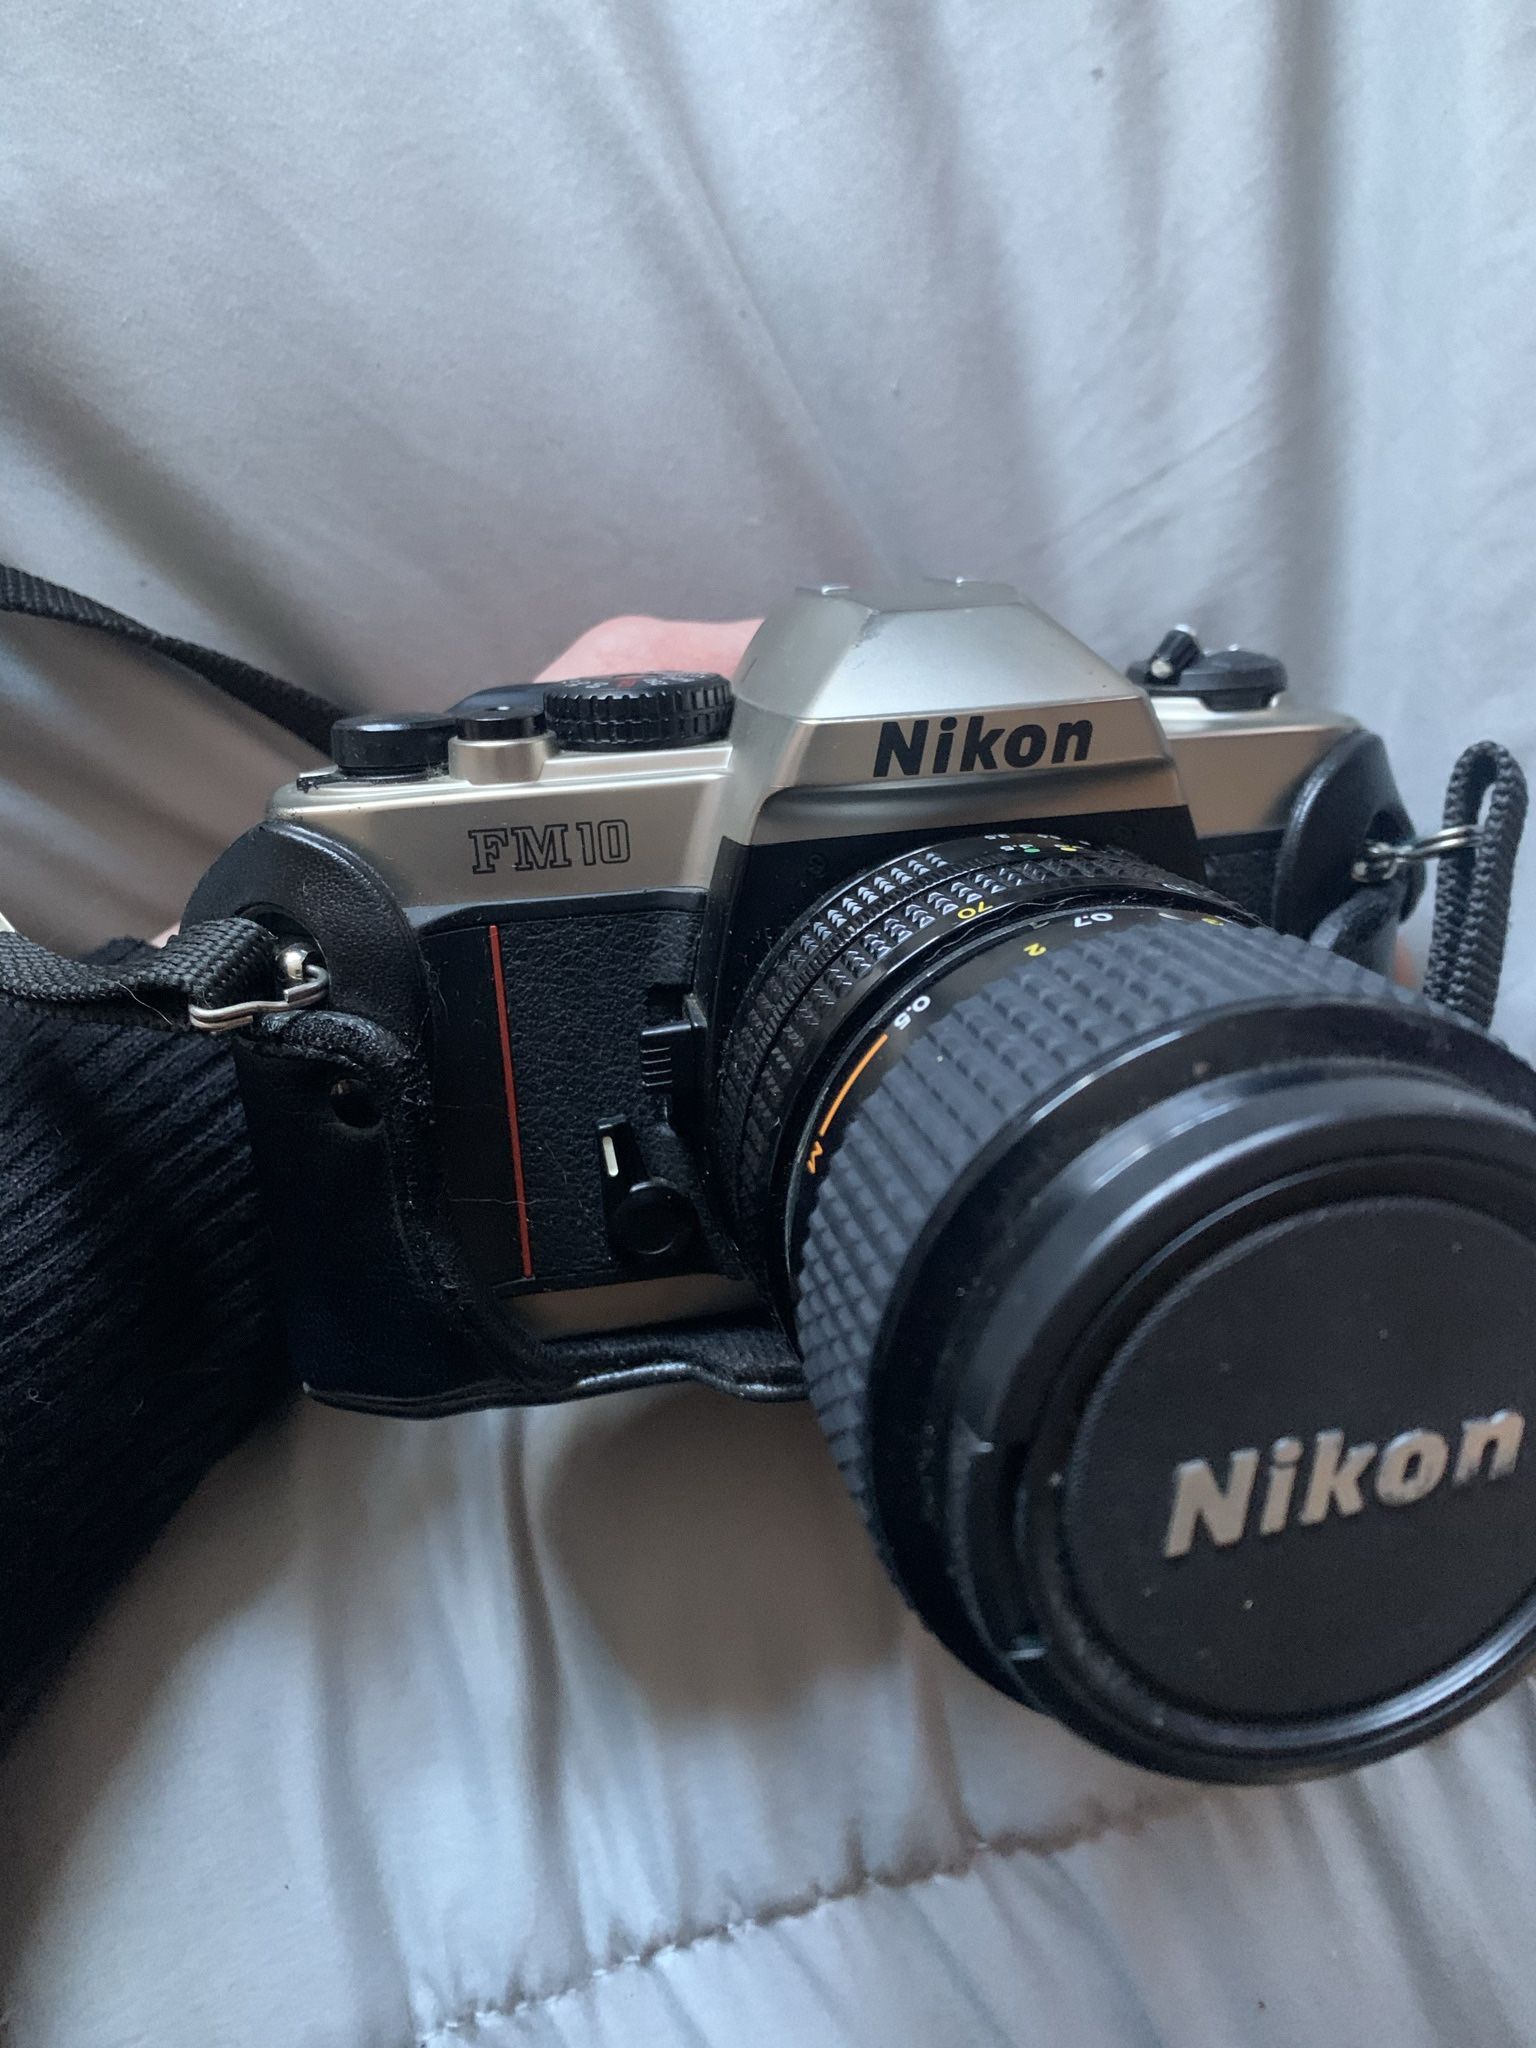 Older Nikon FM10 Camera with Lense